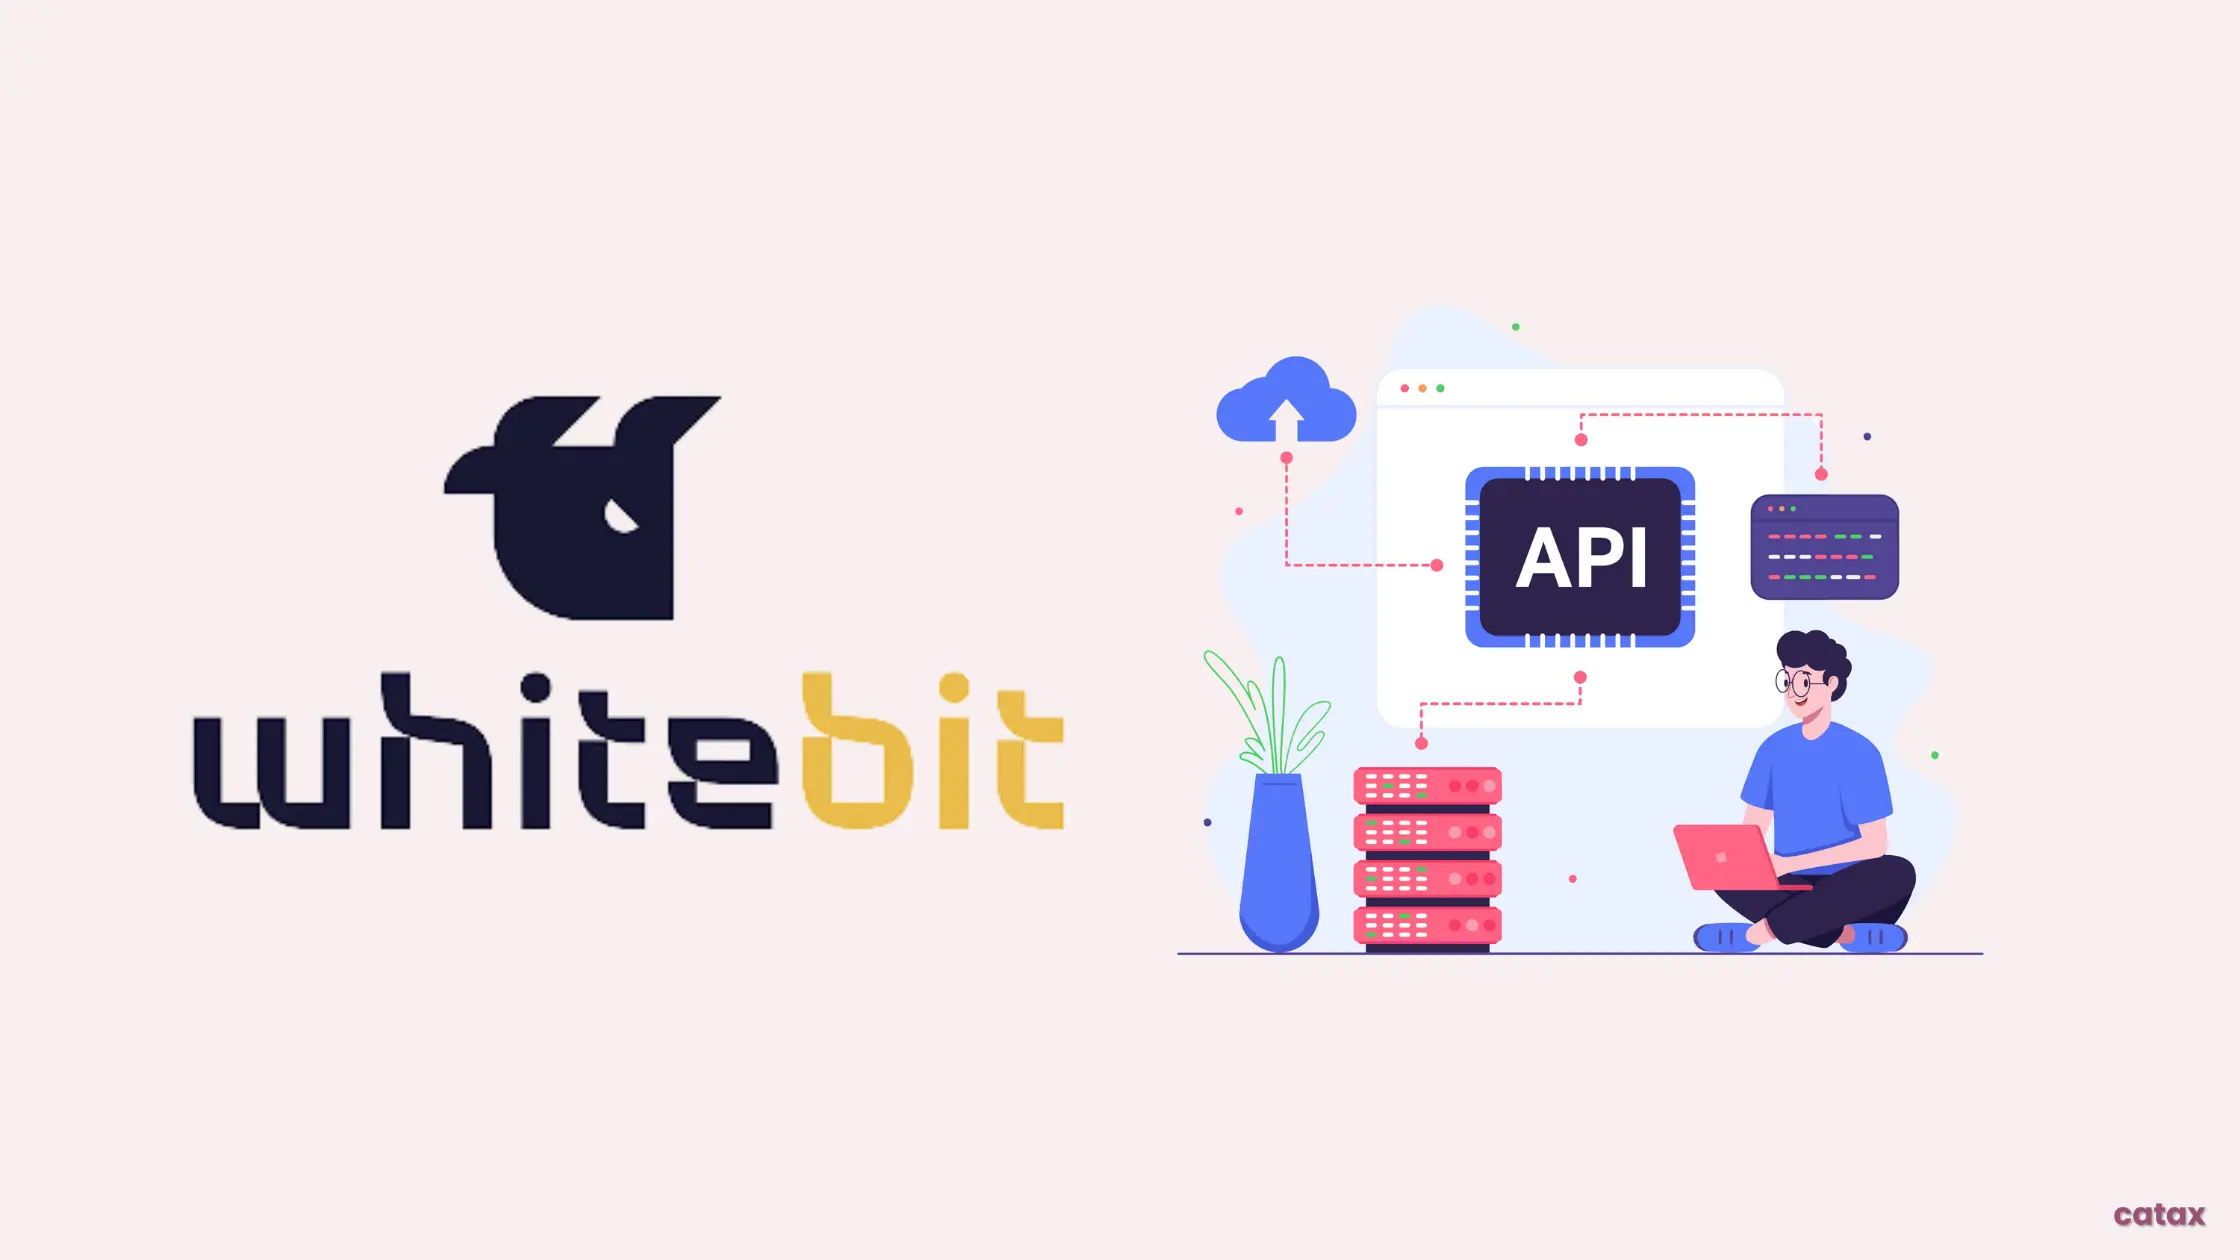 How to Create WhiteBIT API?